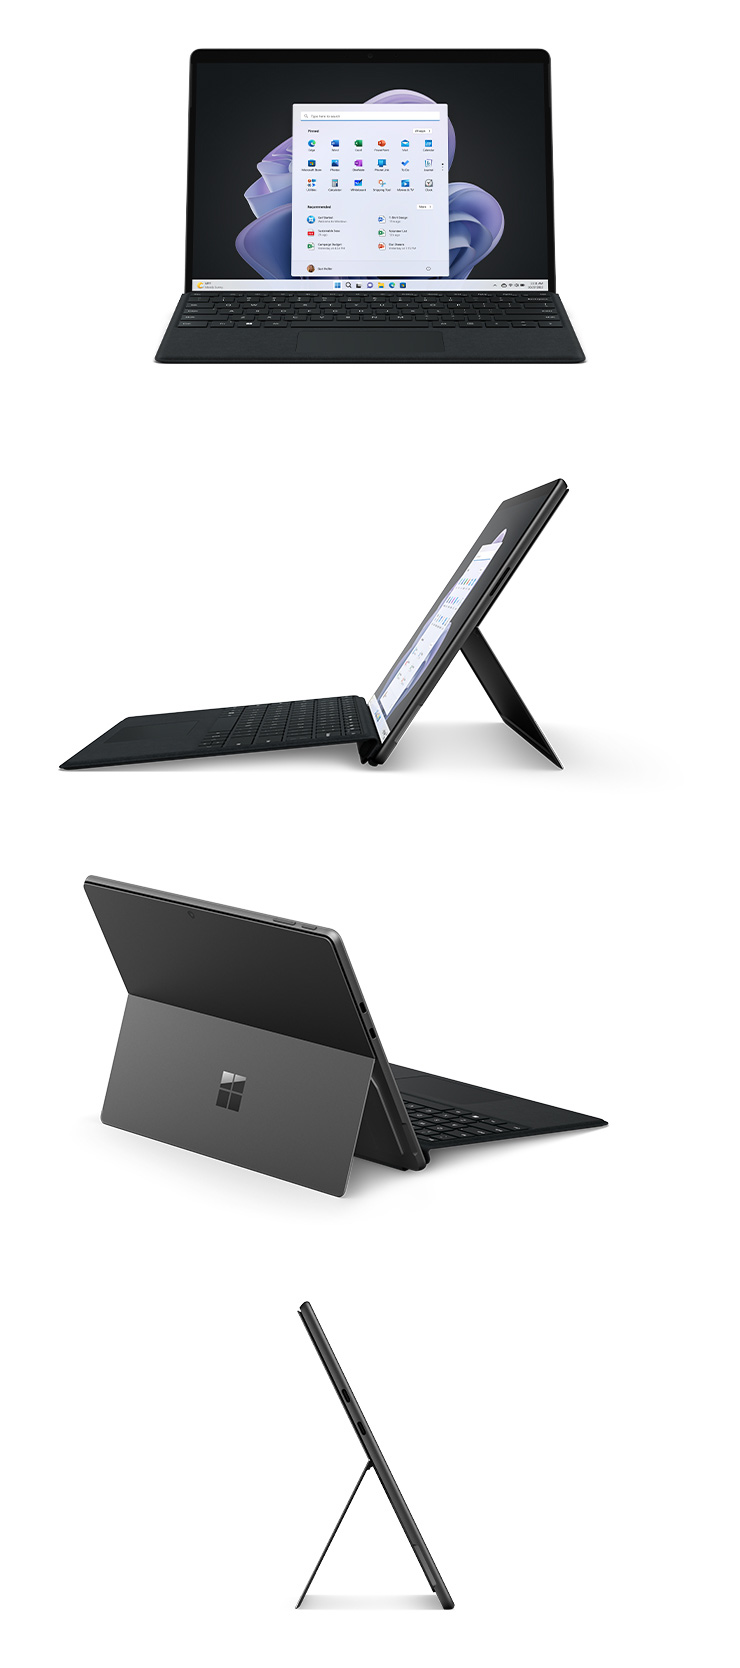 Surface Pro 9 couleur Anthracite de face avec un clavier Type Cover : vue du côté gauche avec un clavier Type Cover, vue de dos avec le pied multiposition intégré déployé et vue du côté droit.